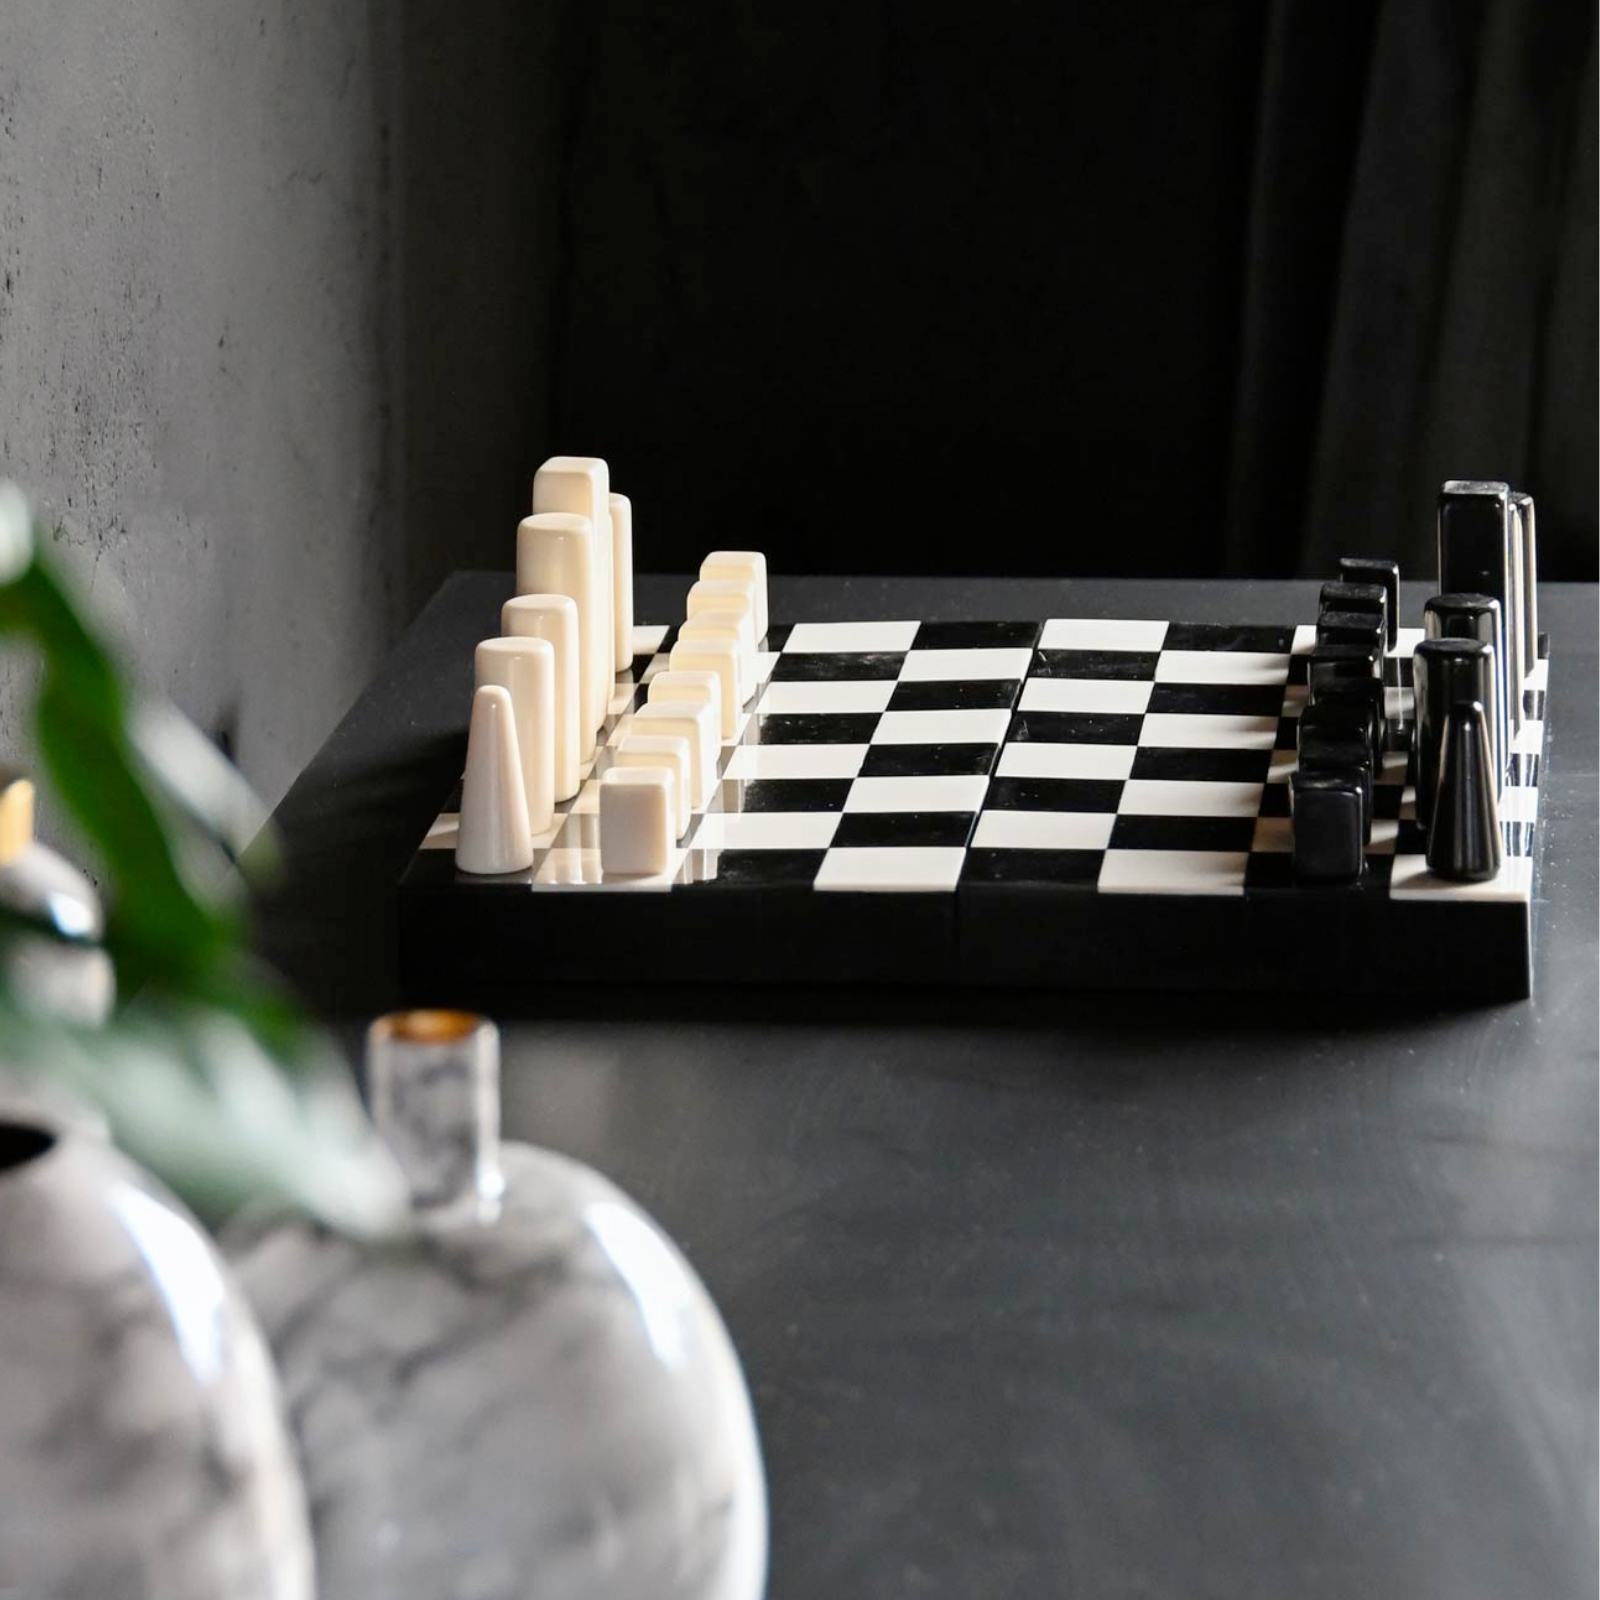 Scacchiera in resina bianca e nera design decorazioni per interno con scacchi